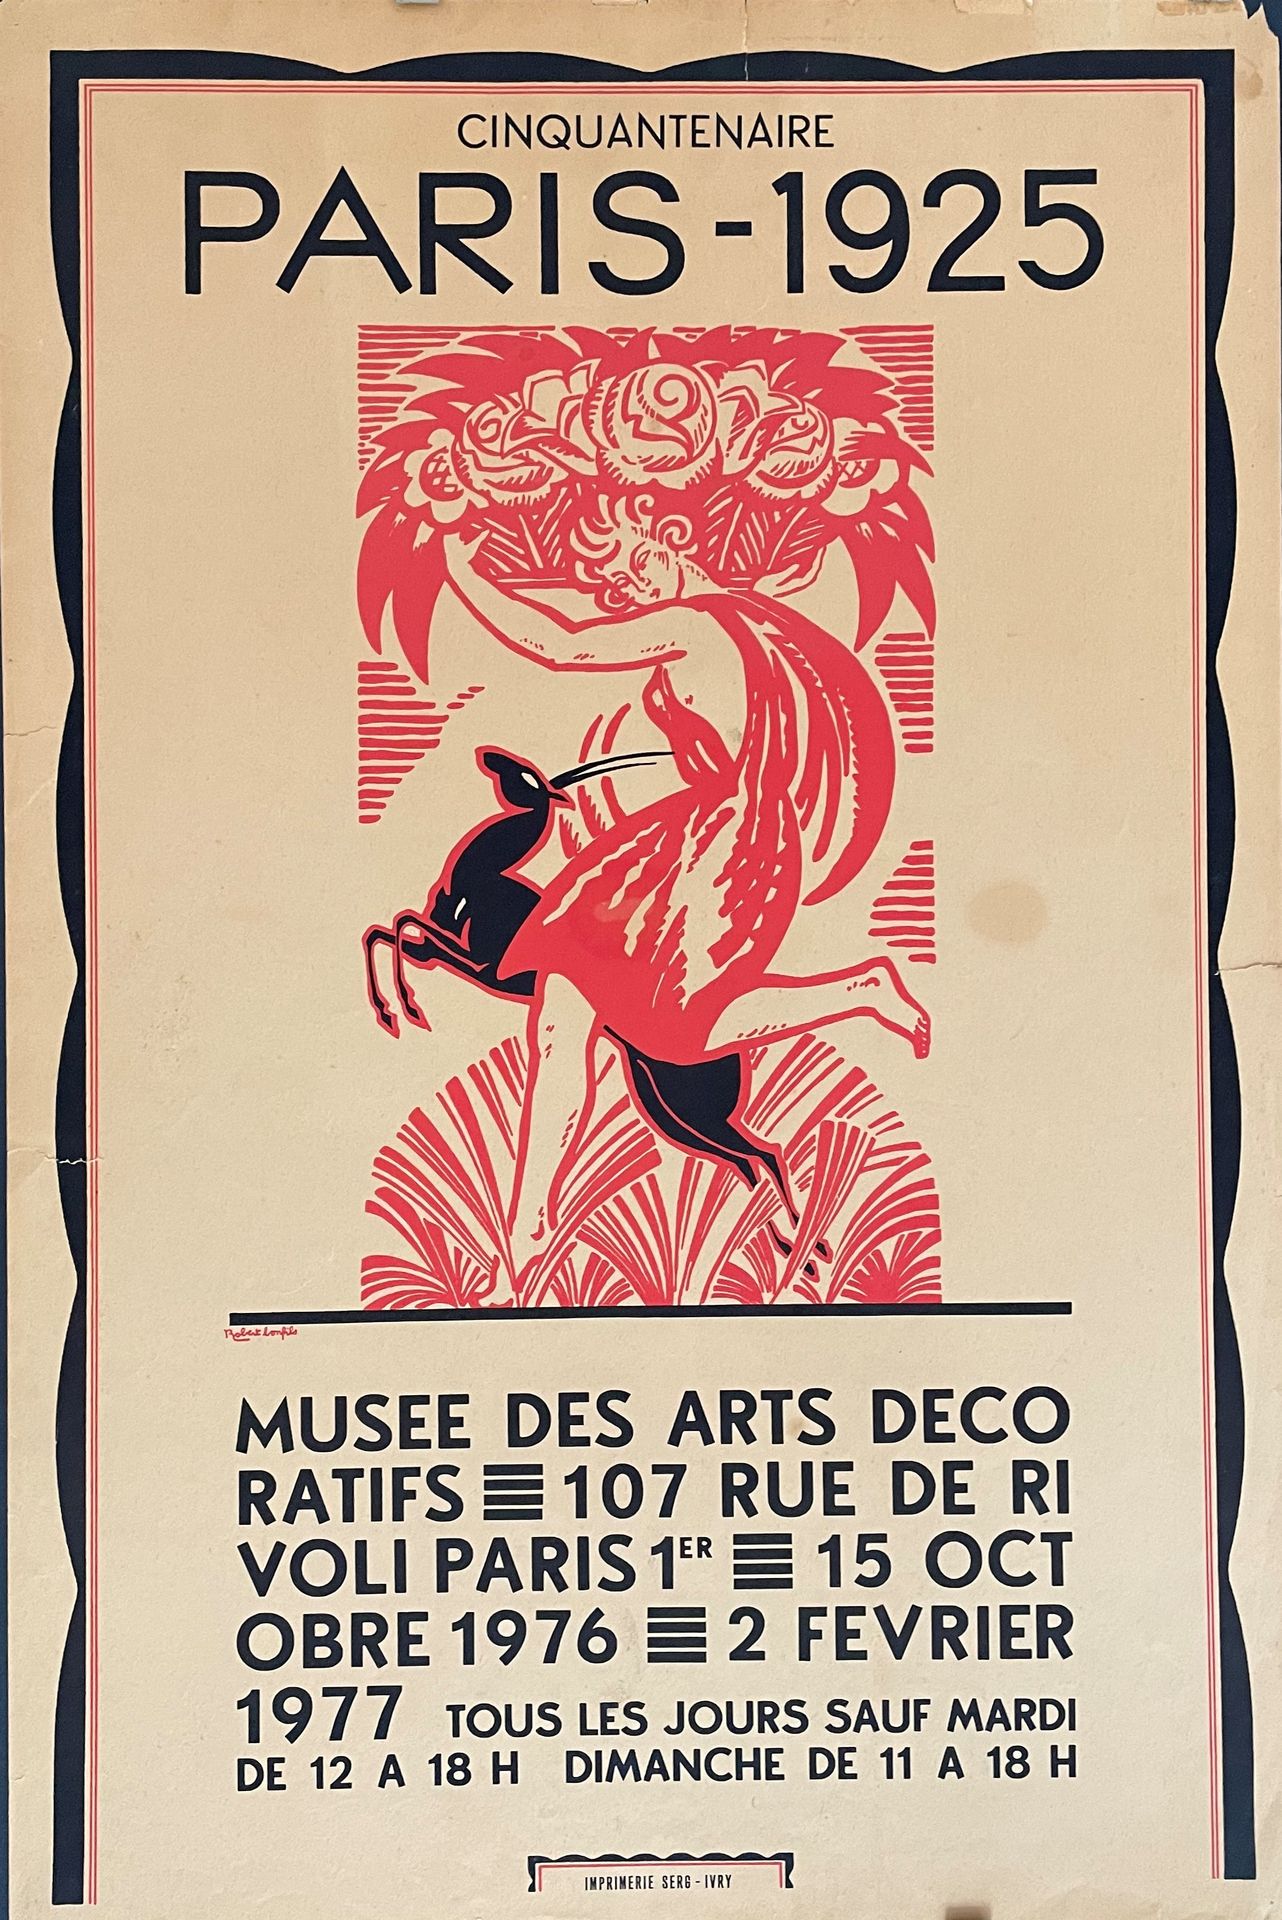 Null ROBERT BONFILS- Imprimerie SEG IVRY Poster Cinquantenaire PARIS-1925

Musée&hellip;